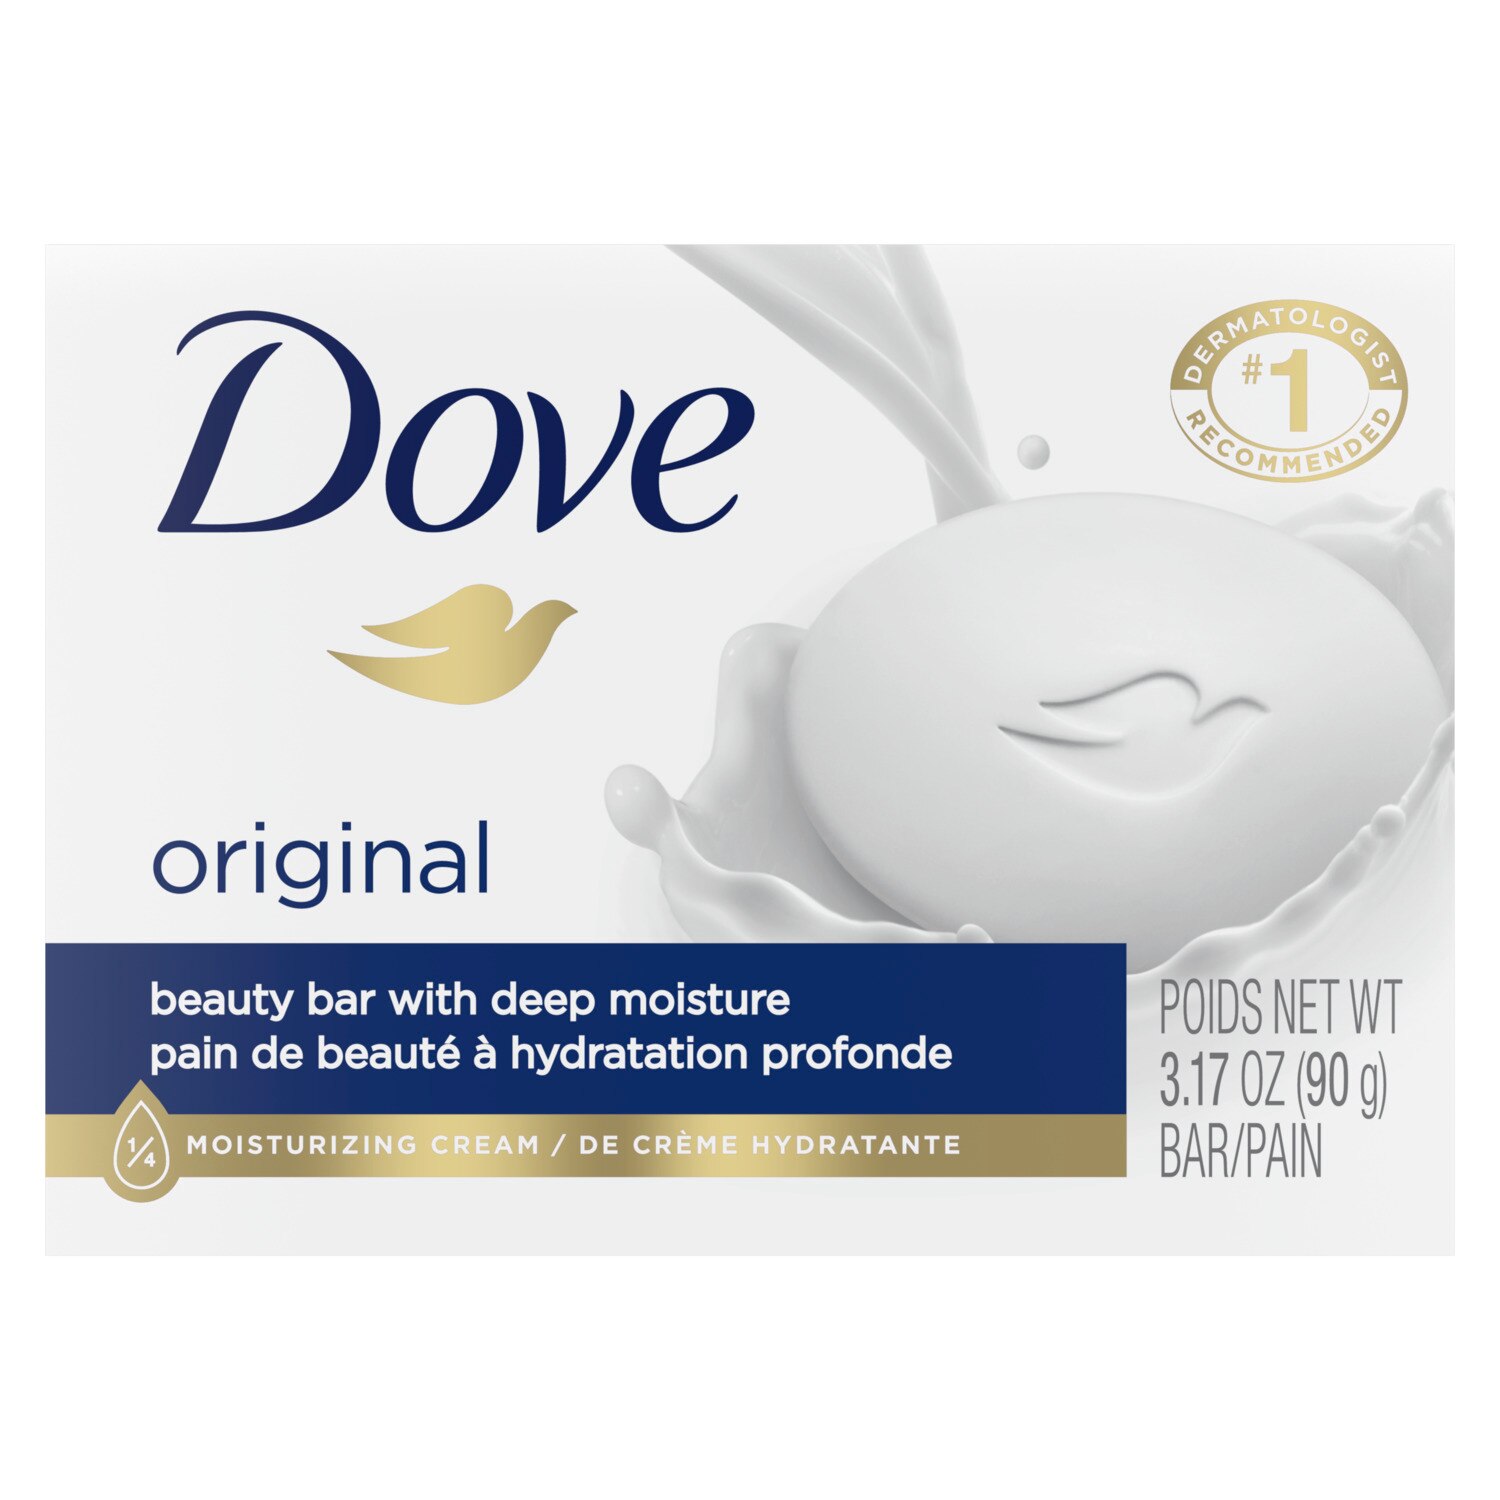 Dove White Beauty Bar, 3.17 OZ, 1 Bar